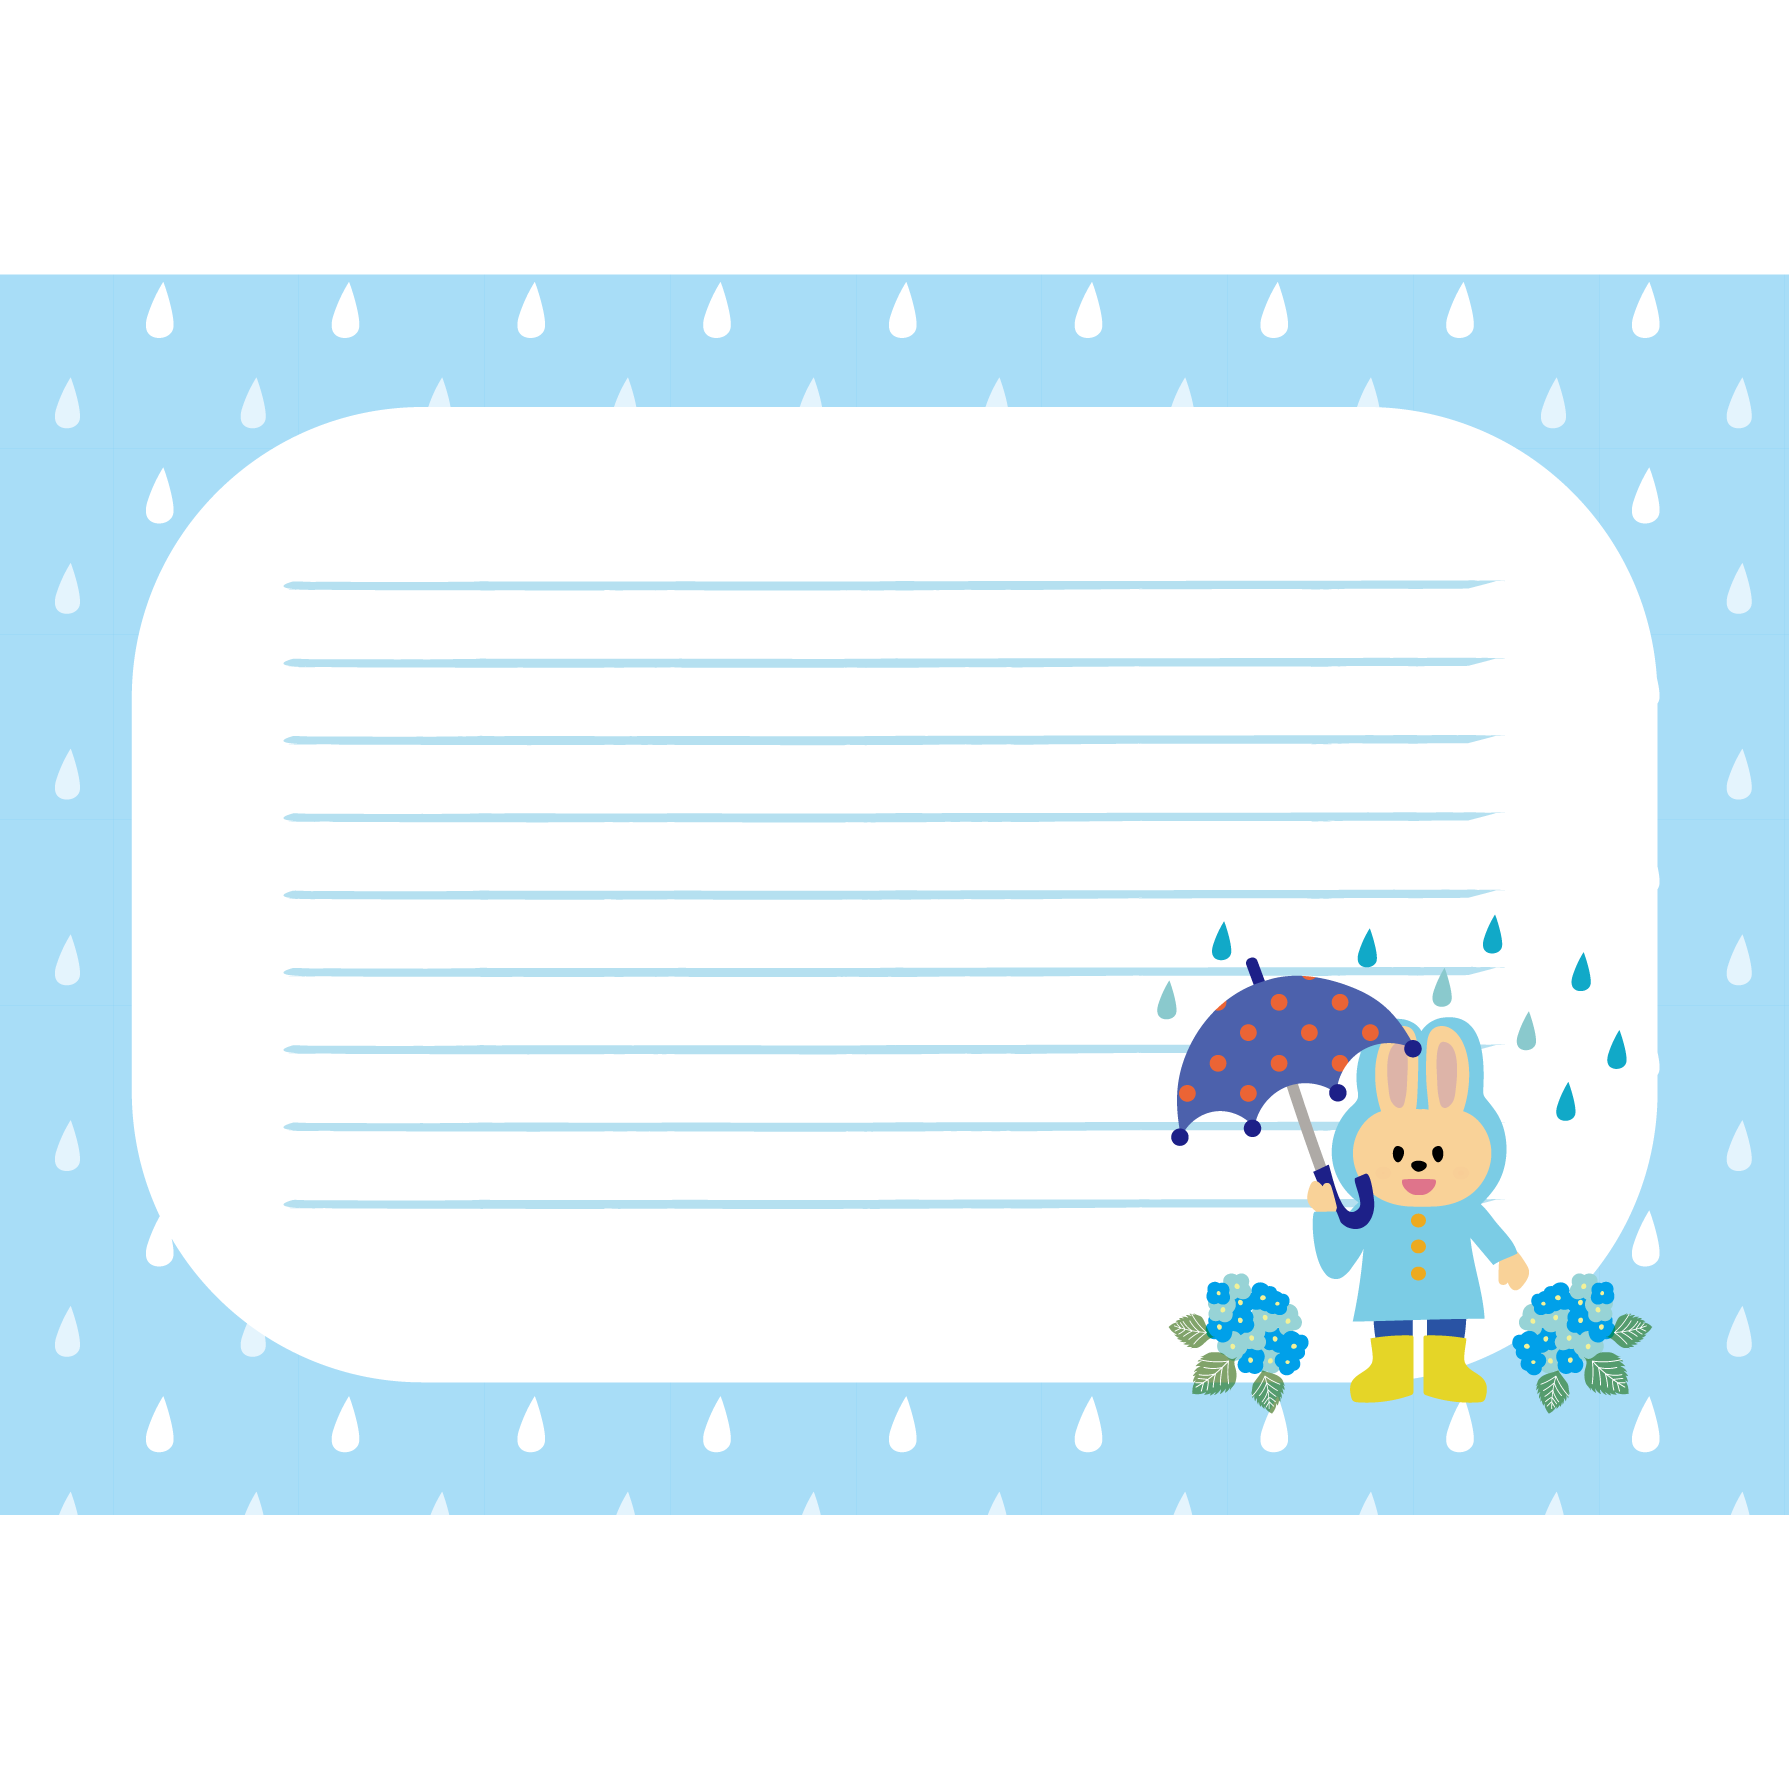 梅雨 うさぎと傘の 便箋 フレーム 青 かわいい フリー イラスト